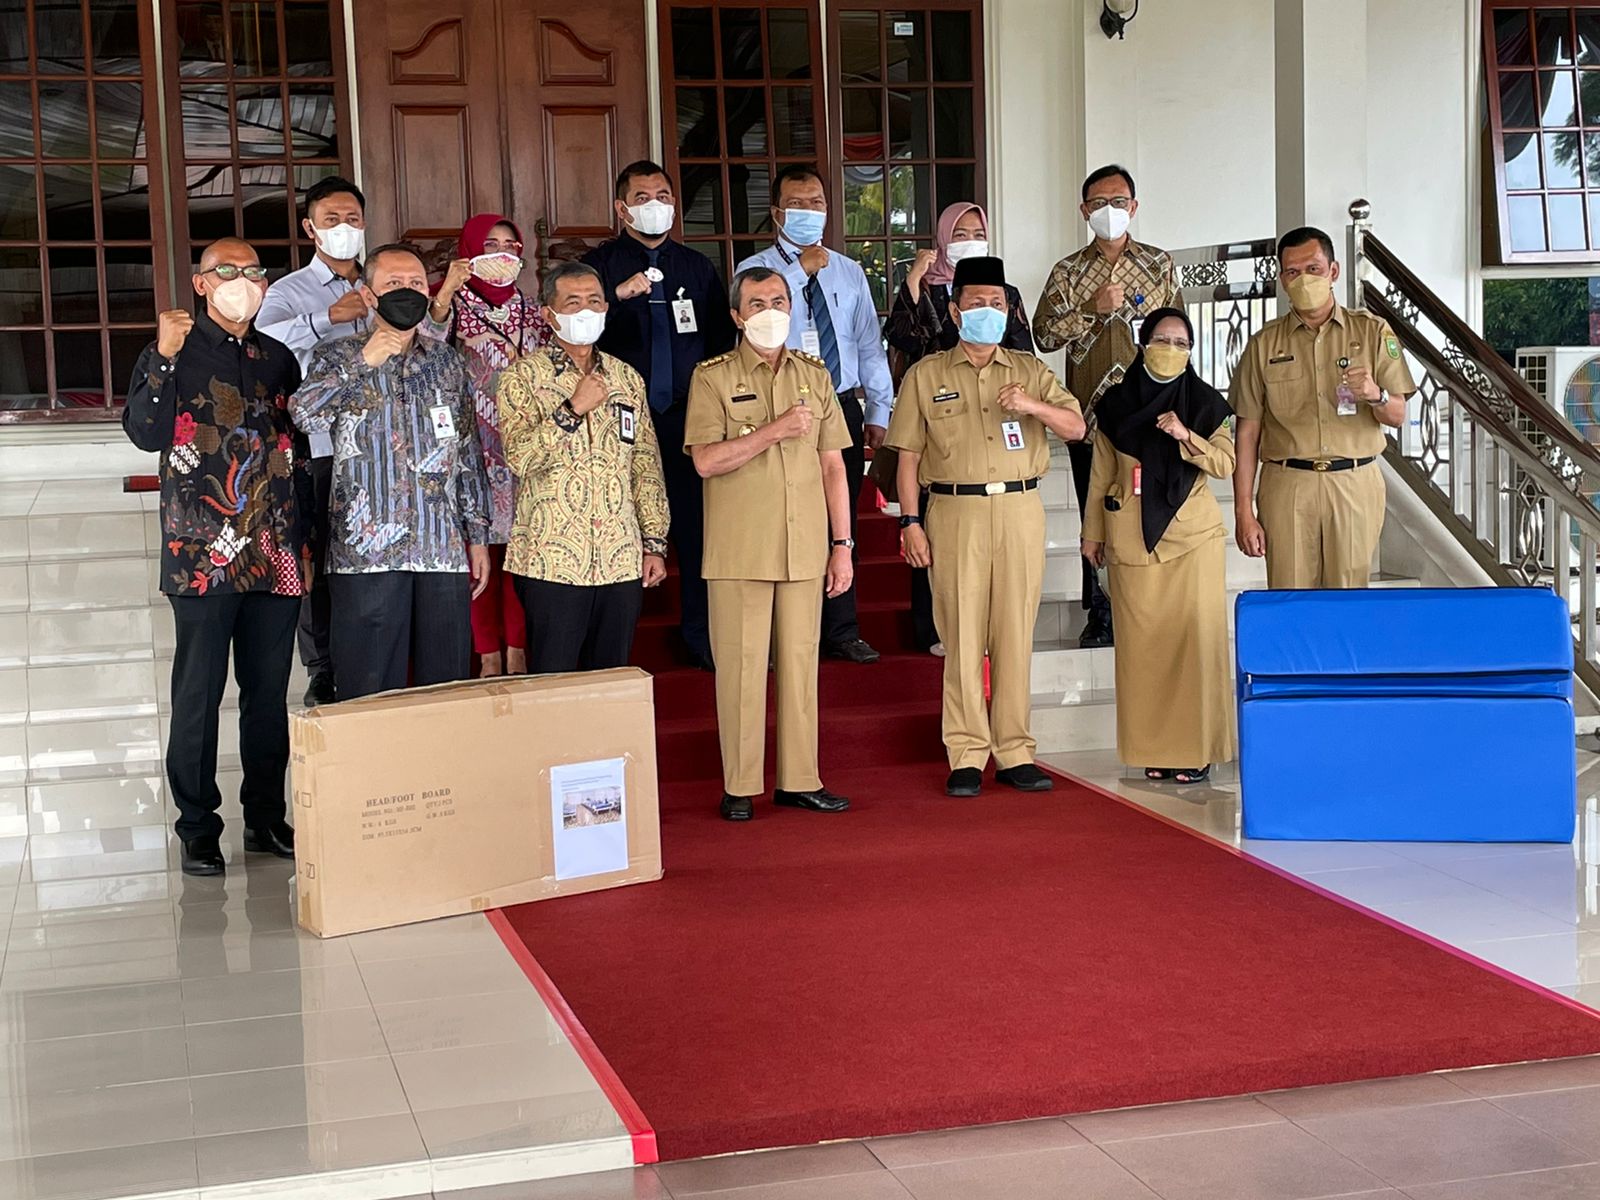 OJK Riau Donasi Ranjang Pasien Rp263 Juta